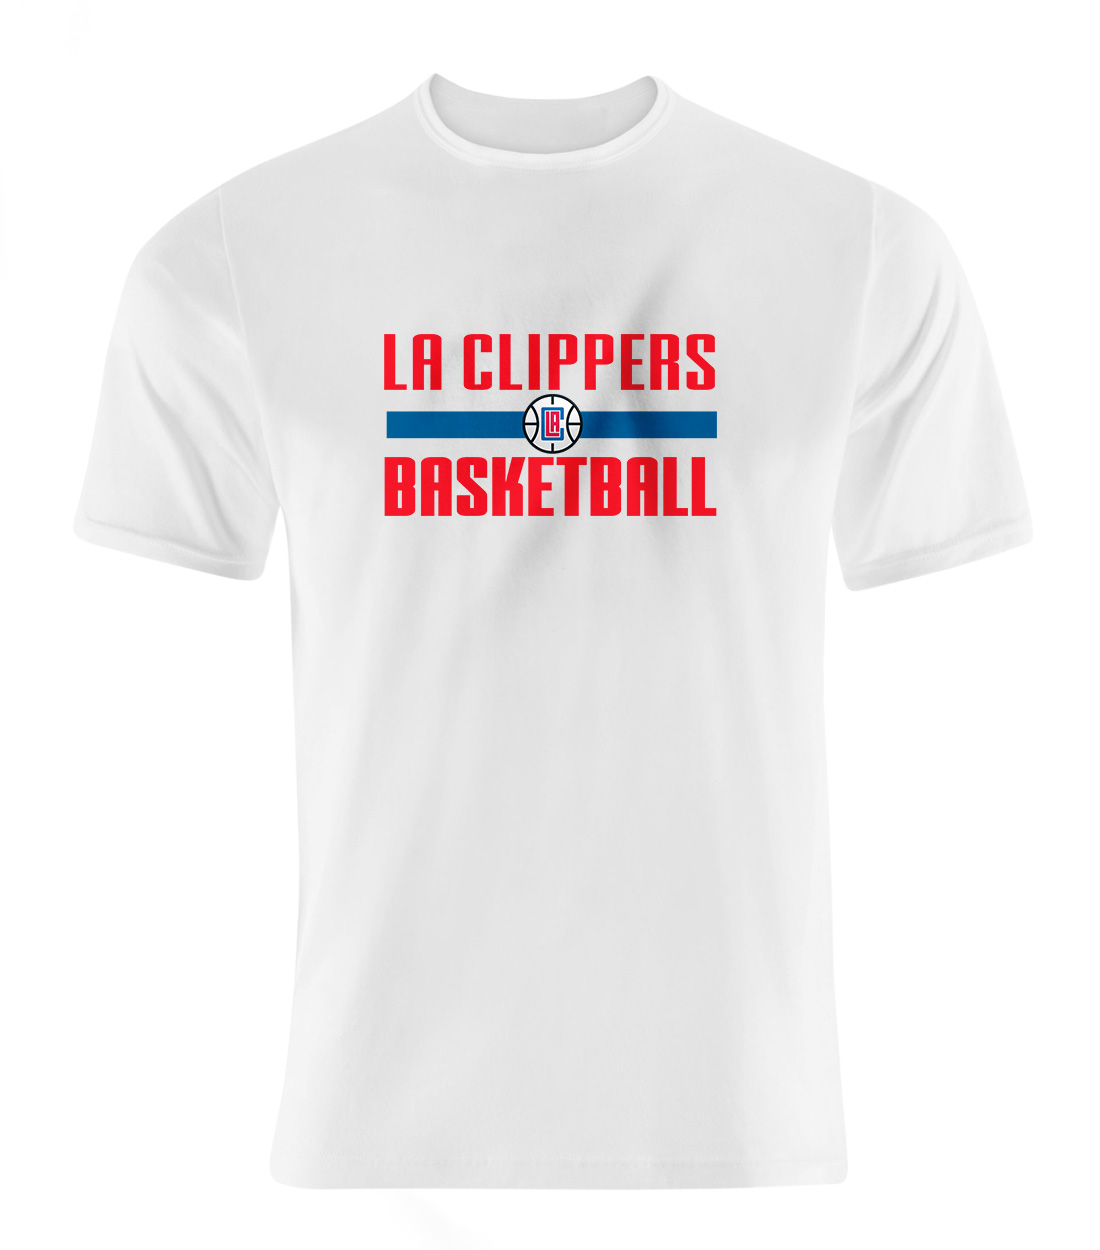 L.A. Clippers Basketball Tshirt (TSH-WHT-708)